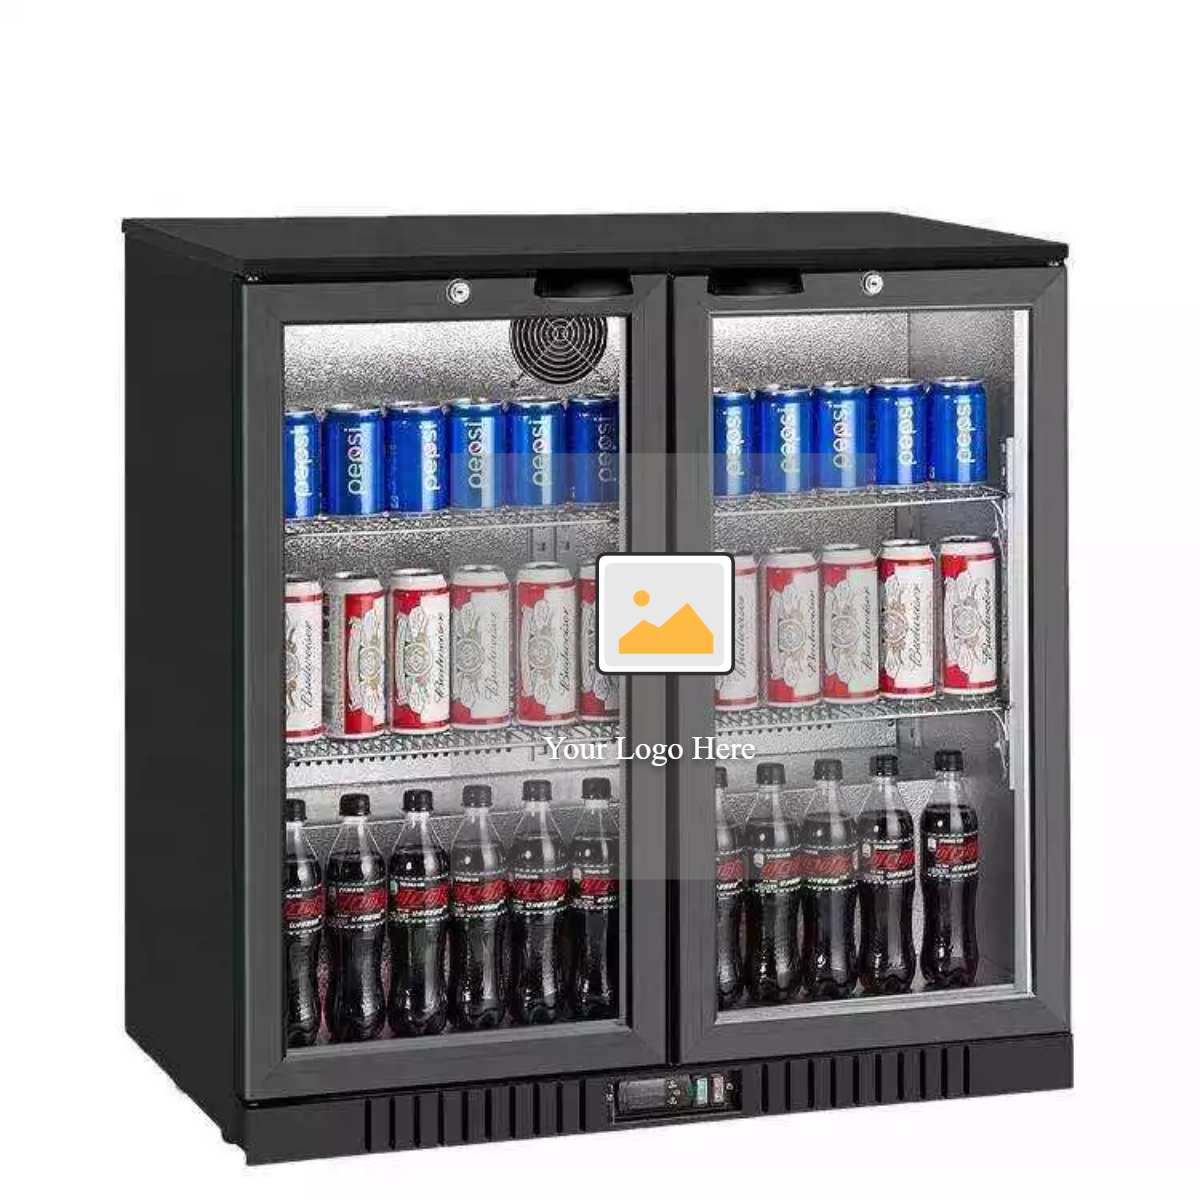 Vitrine commerciale à trois portes en verre, congélateur vertical pour boissons et réfrigérateur à vin pour supermarché et bar.